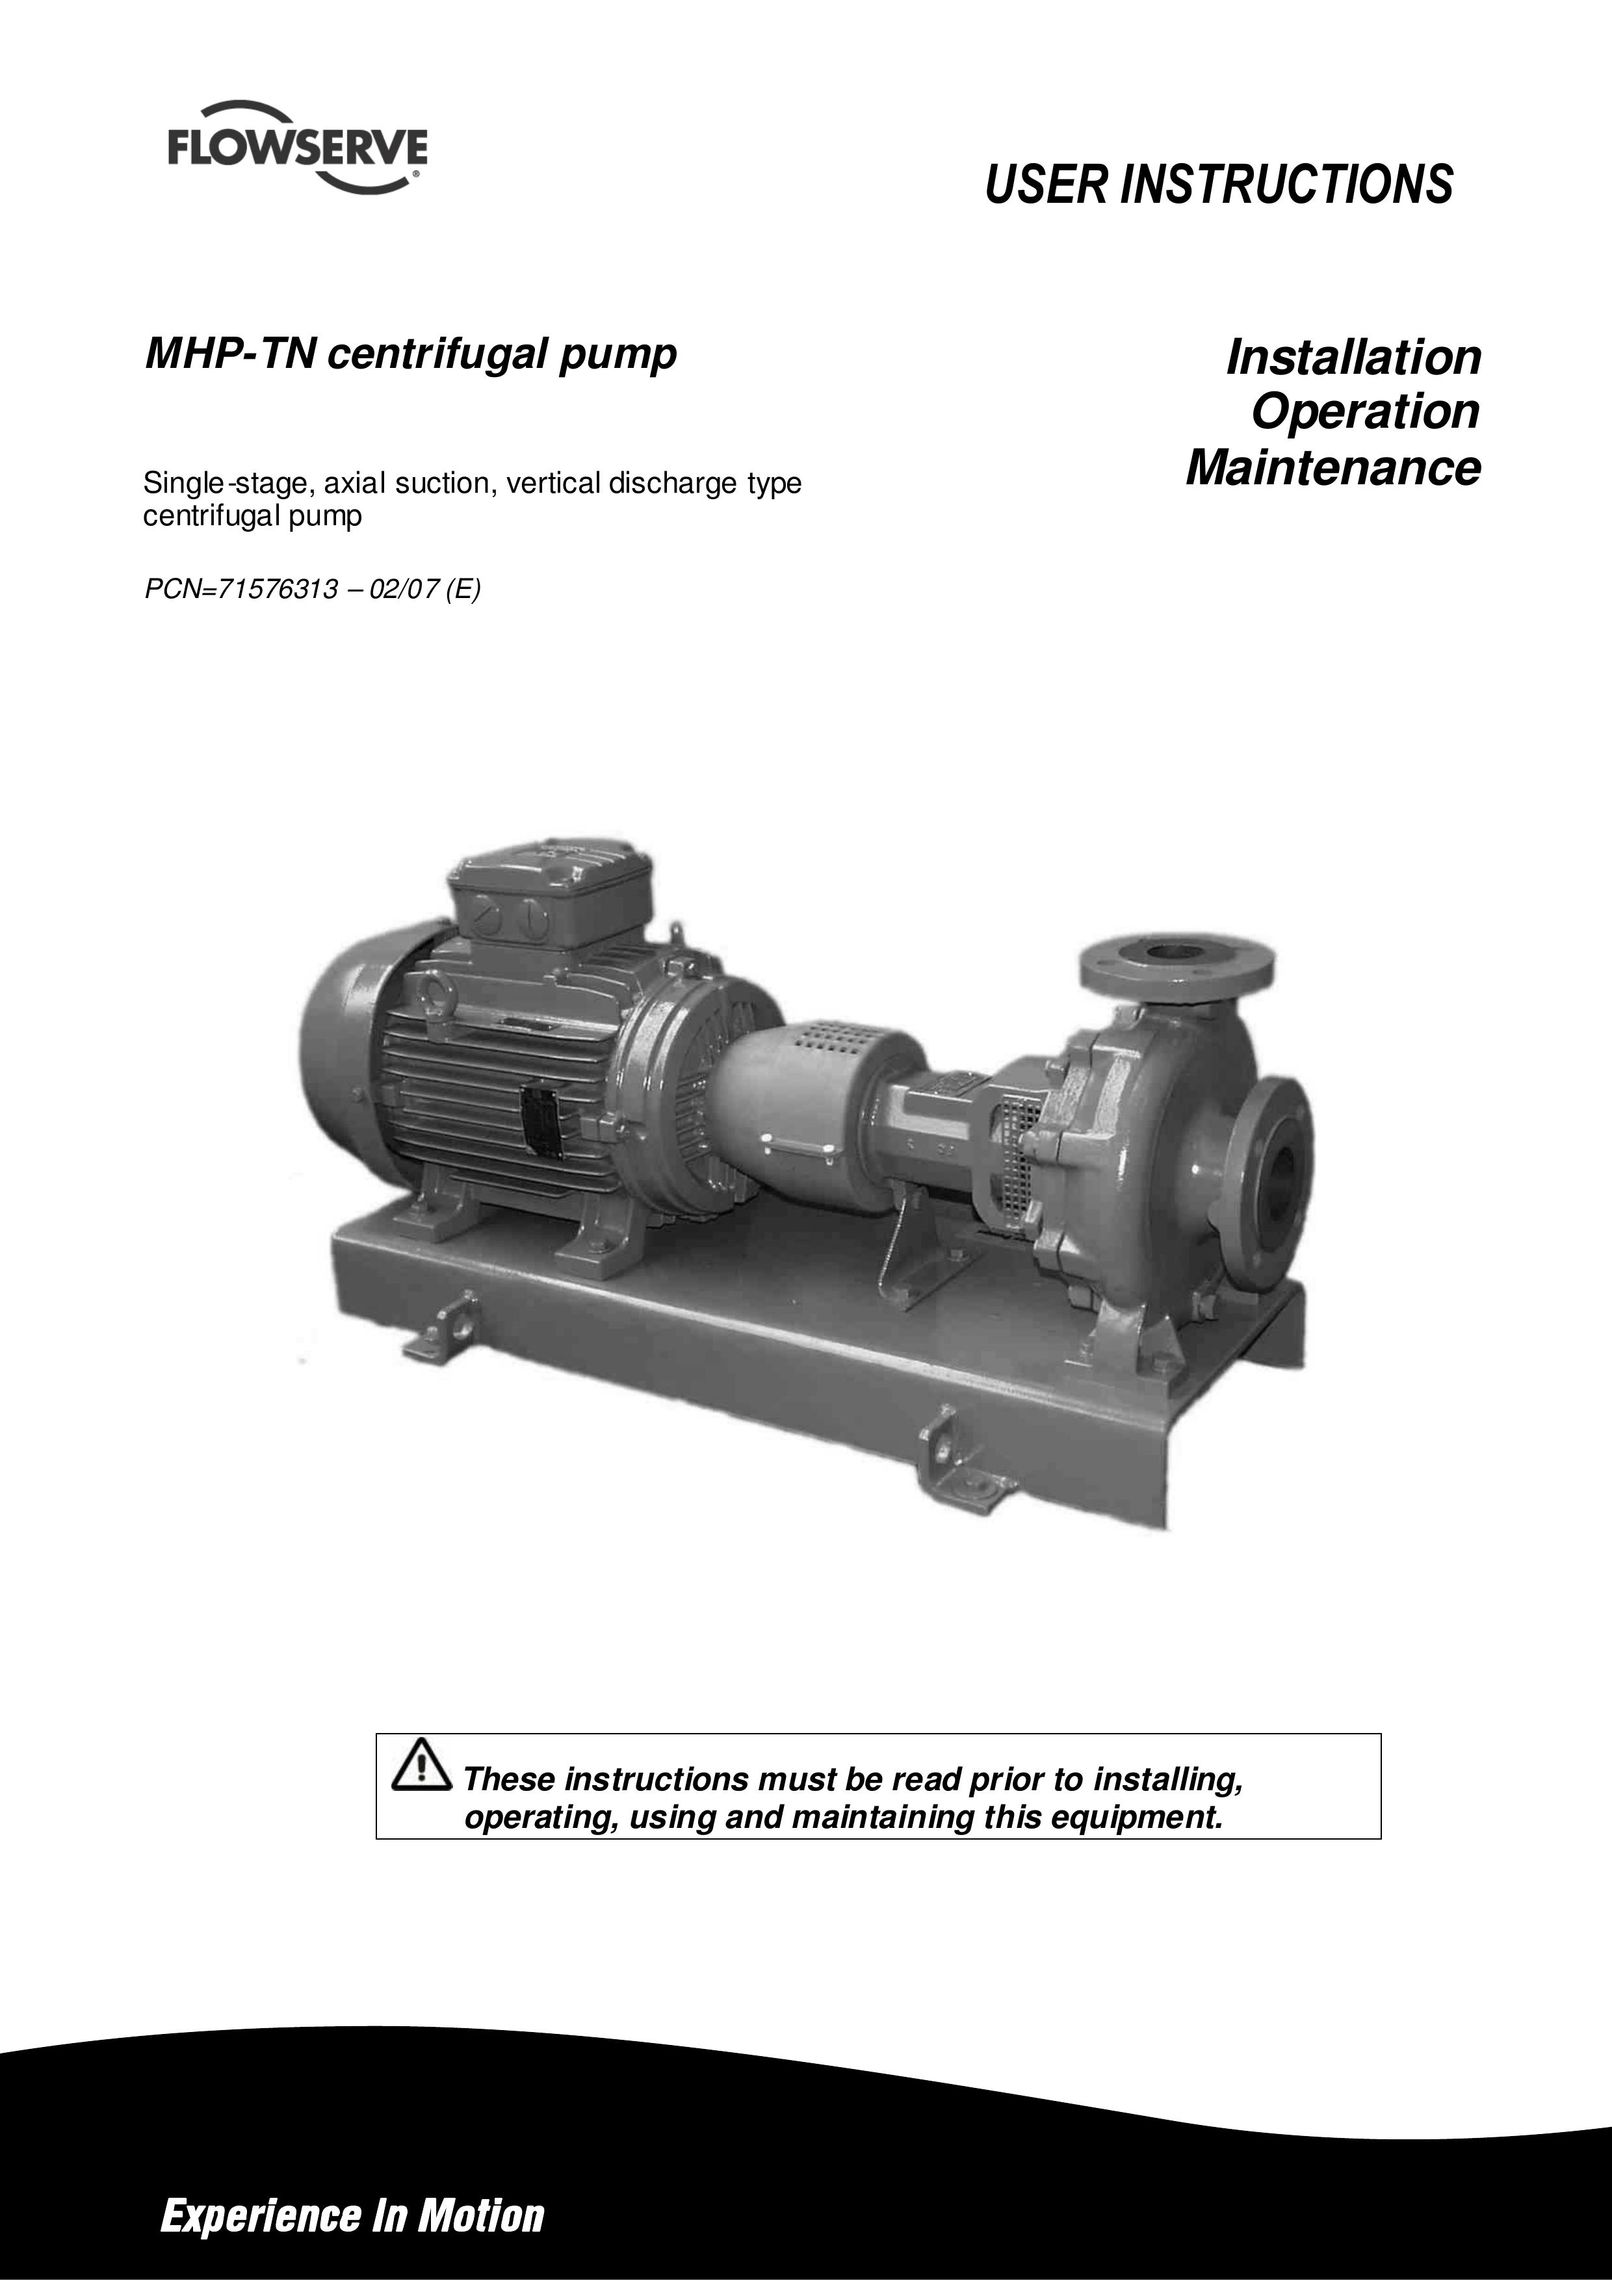 HP (Hewlett-Packard) MHP-TN Water Pump User Manual